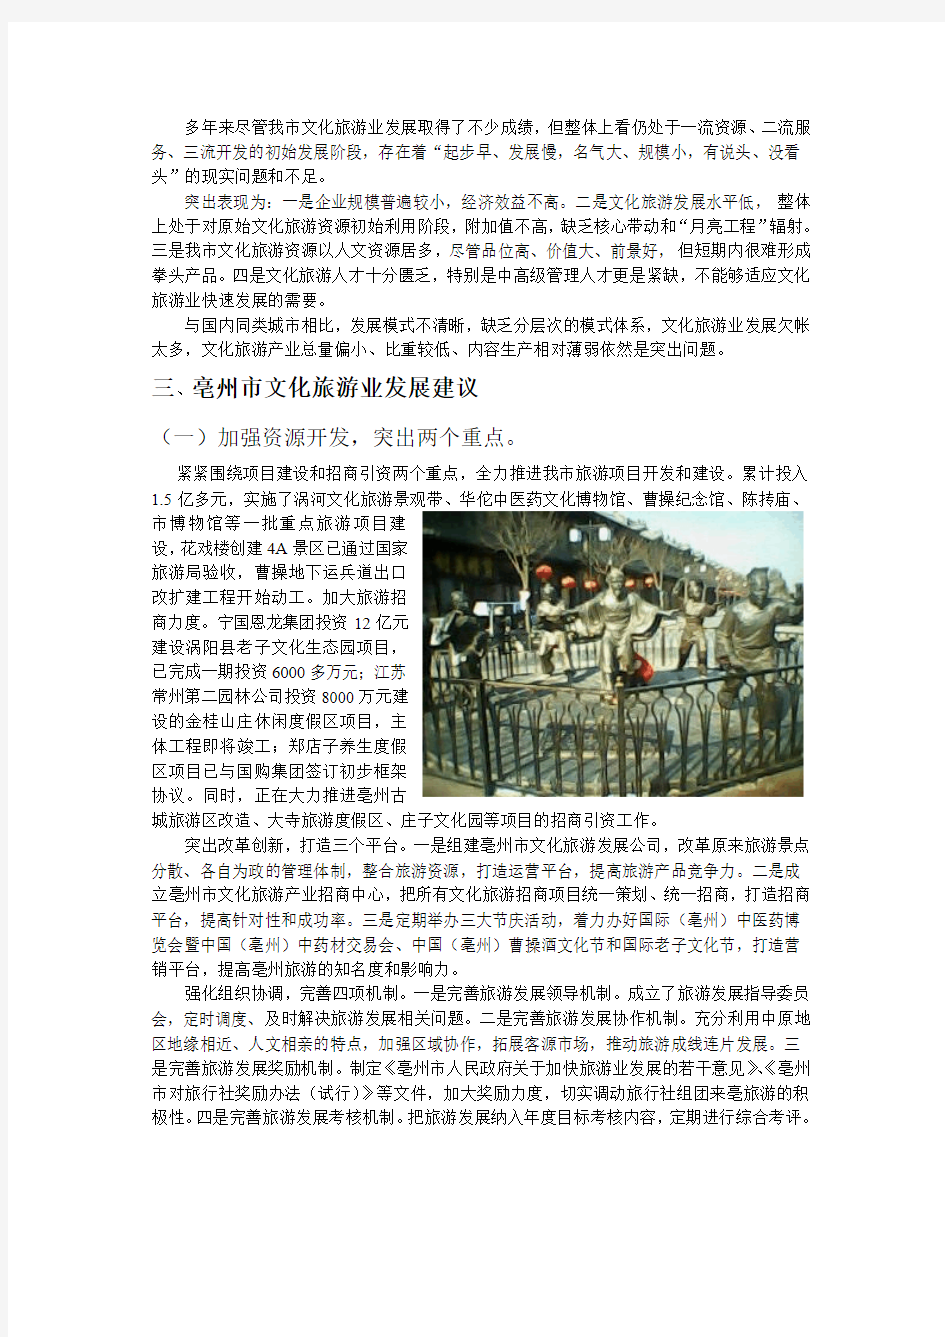 亳州市文化旅游产业调查报告